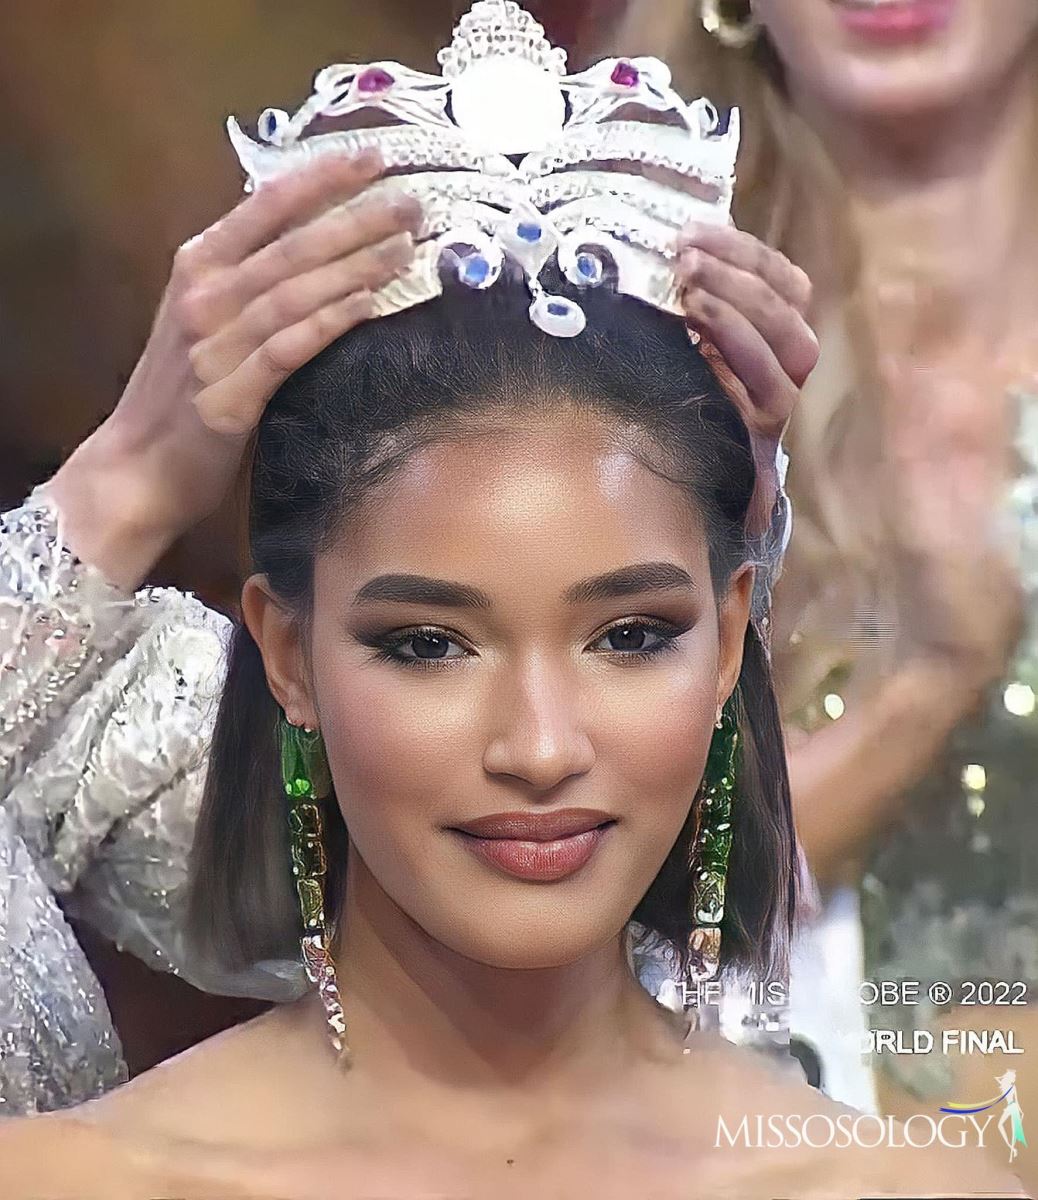 Người đẹp Cộng hòa Dominica đăng quang Miss Globe 2022, Lâm Thu Hồng là Á hậu - Ảnh 1.